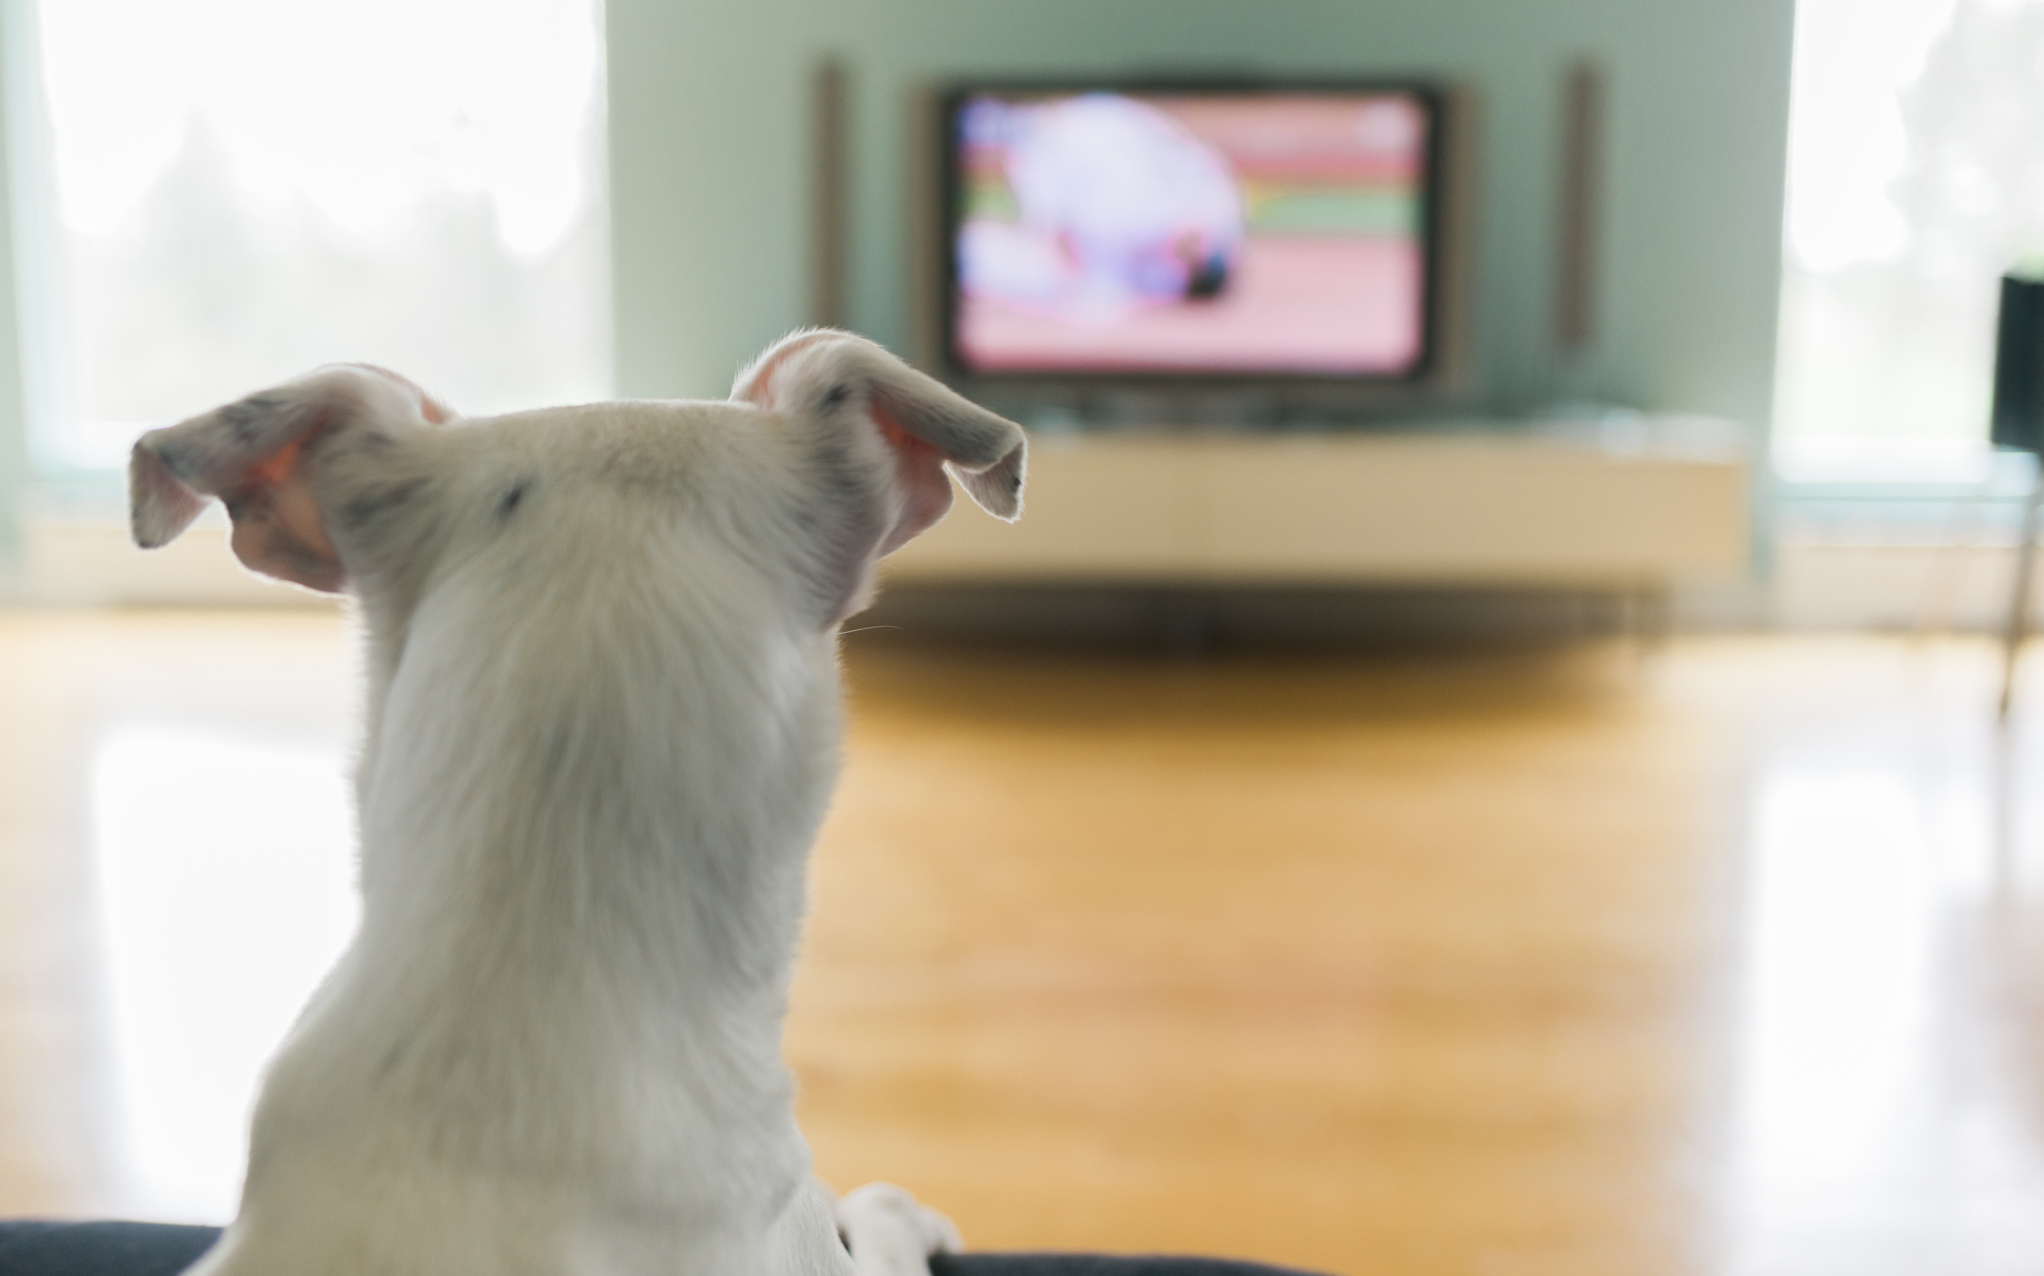 Cosa vedono i cani quando guardano la tv?